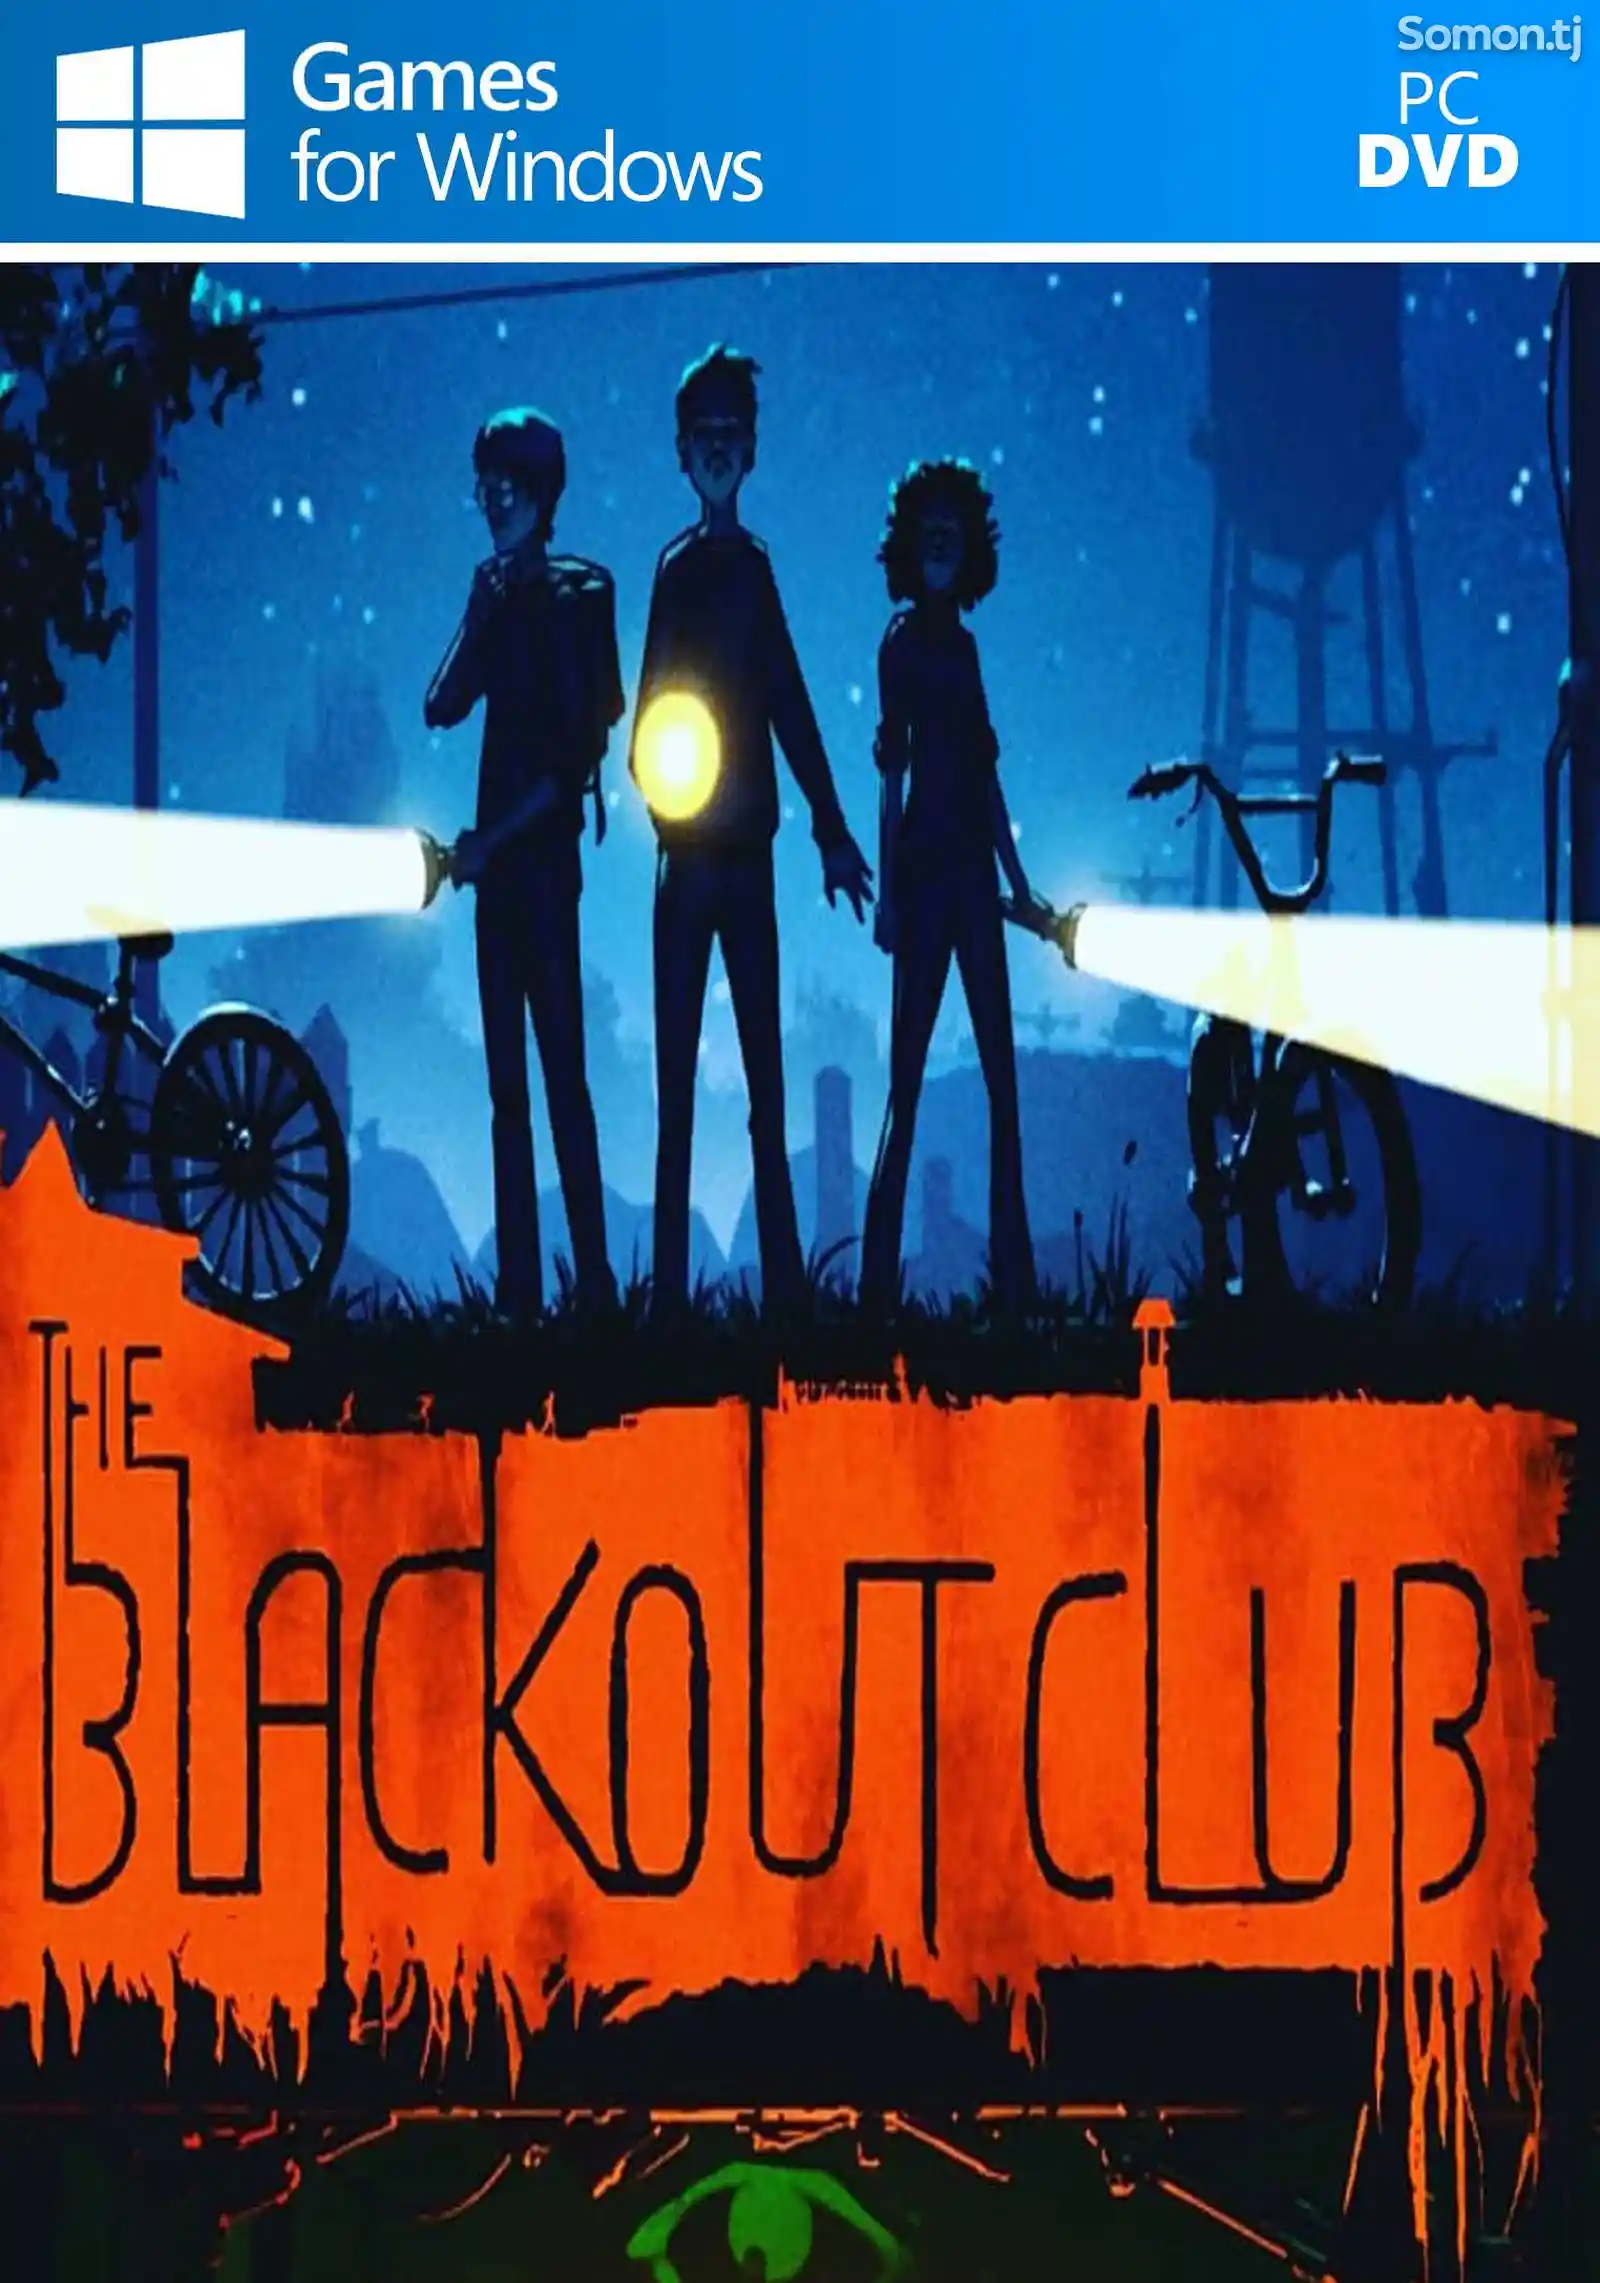 Игра The blackout club для компьютера-пк-pc-1